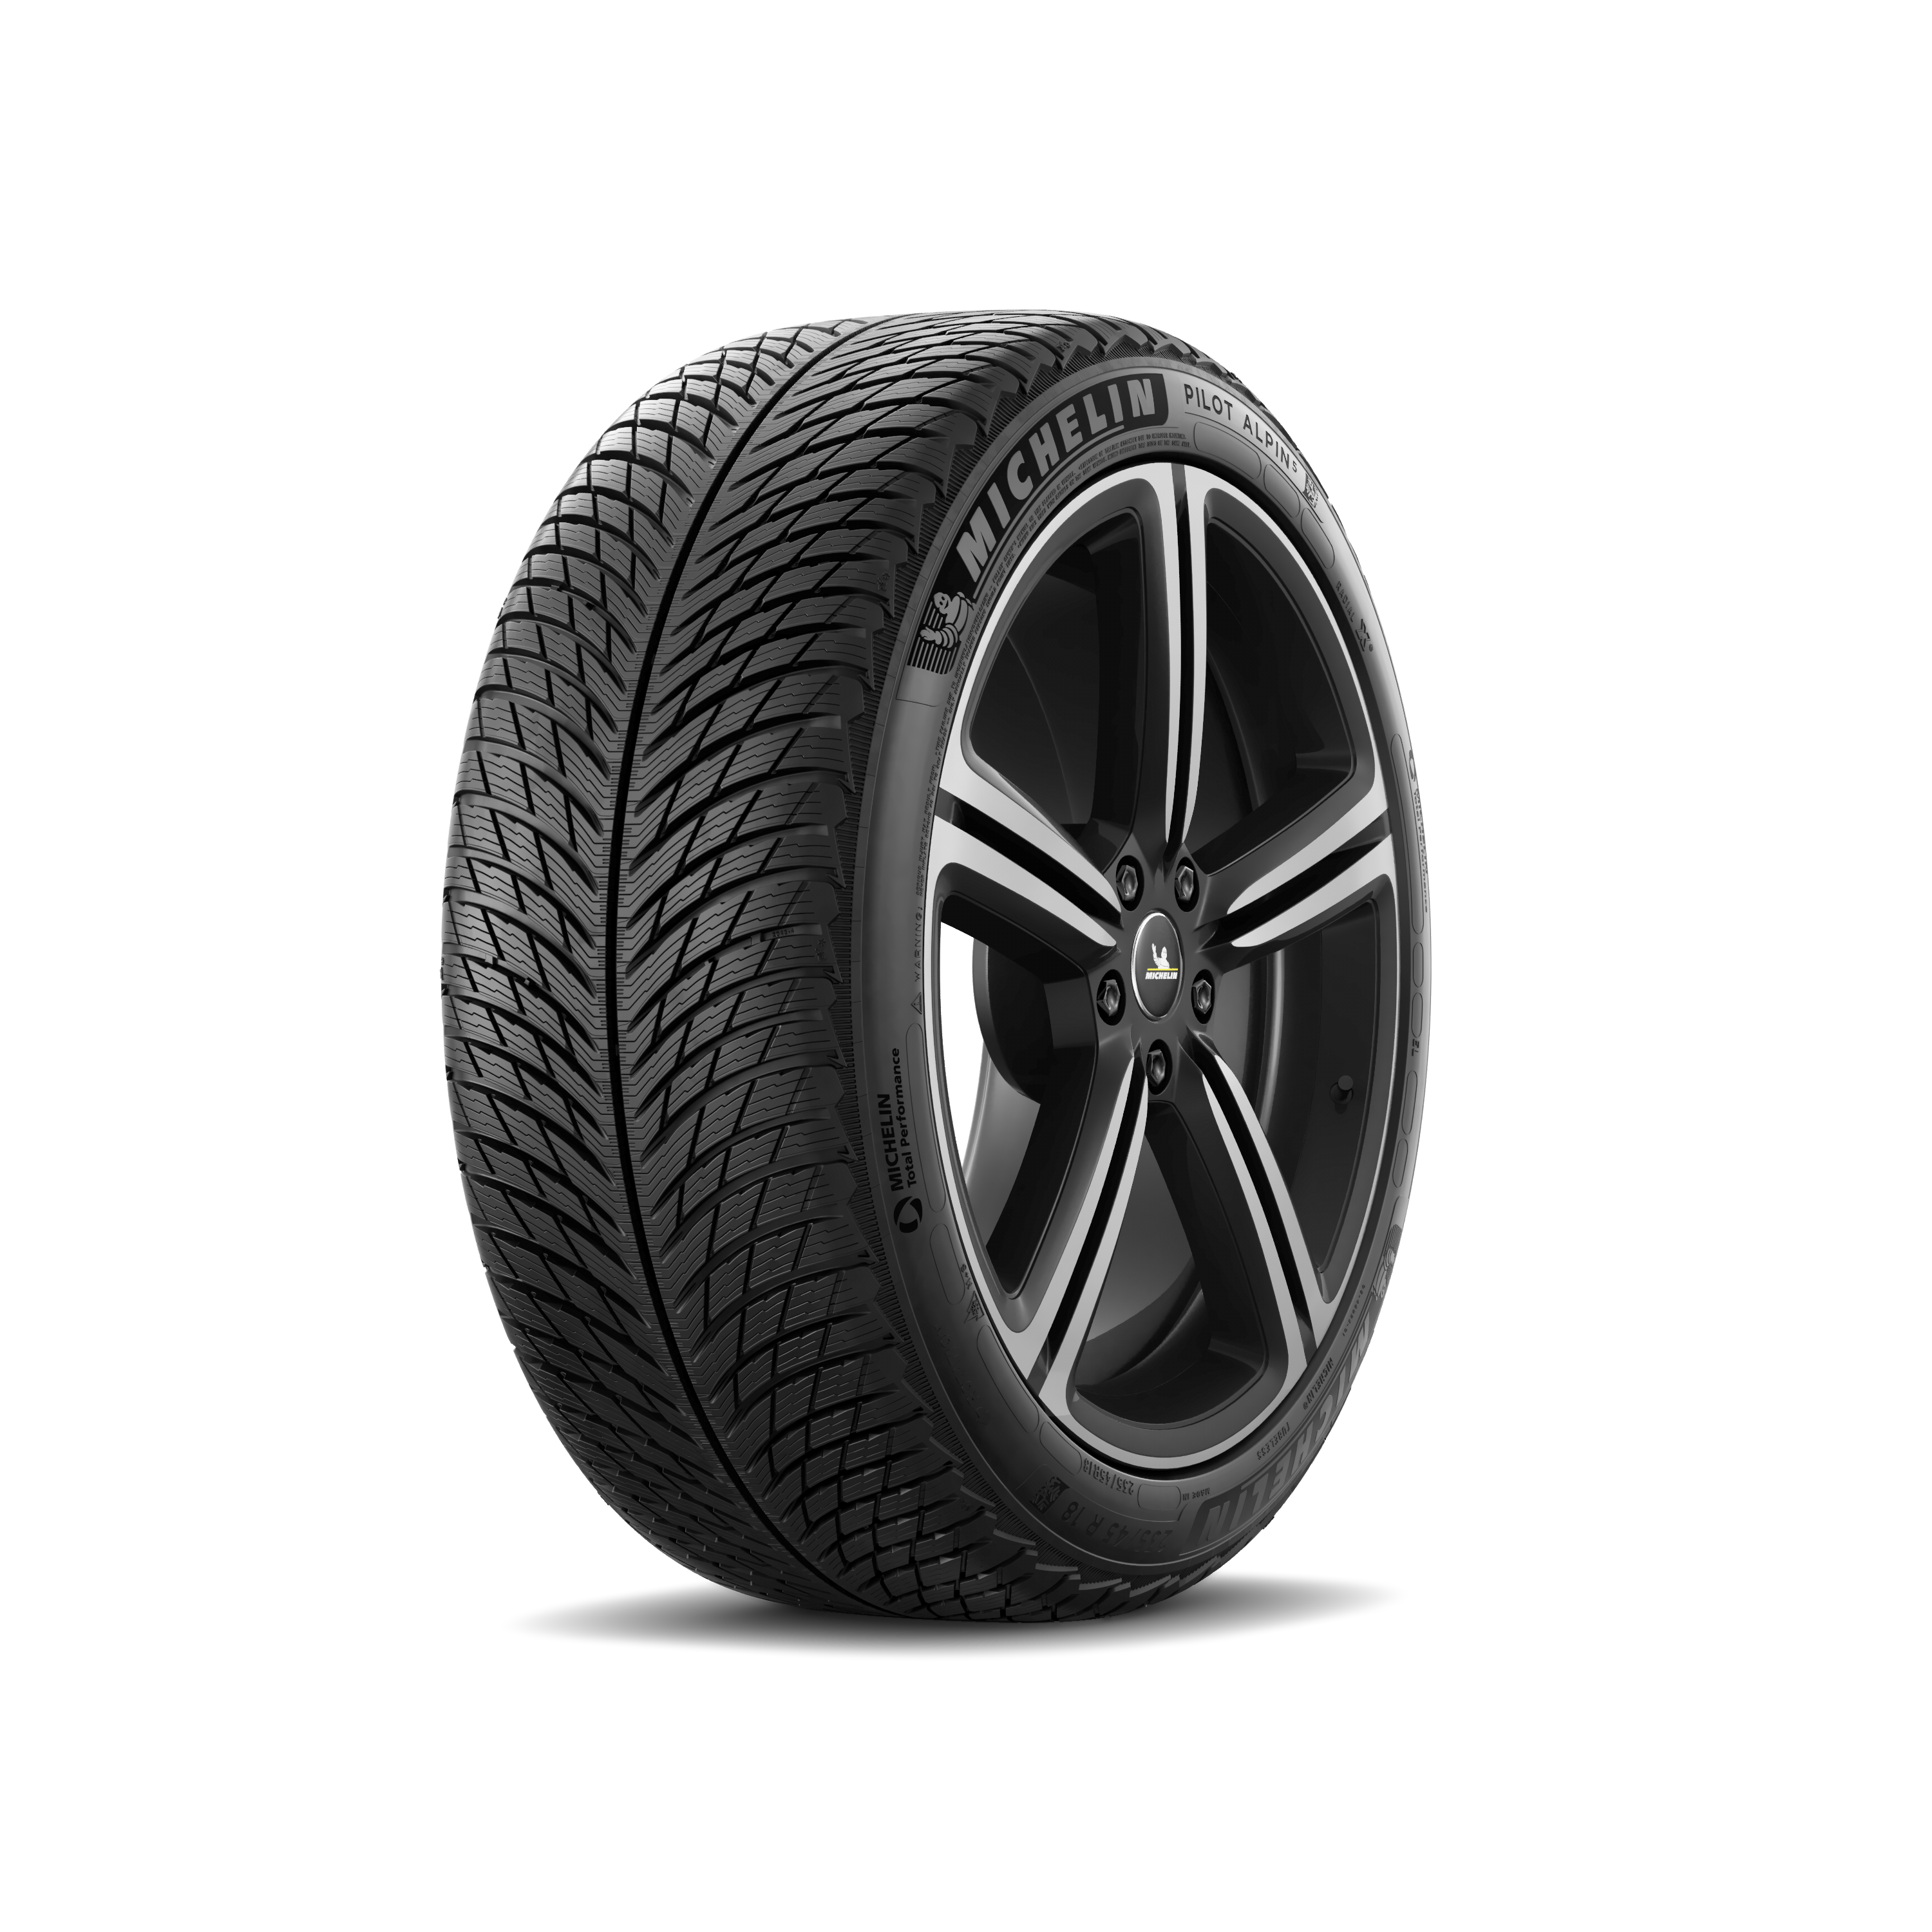 Gomme Nuove Michelin 235/55 R18 104H Pilotalpin5suv XL M+S pneumatici nuovi Invernale